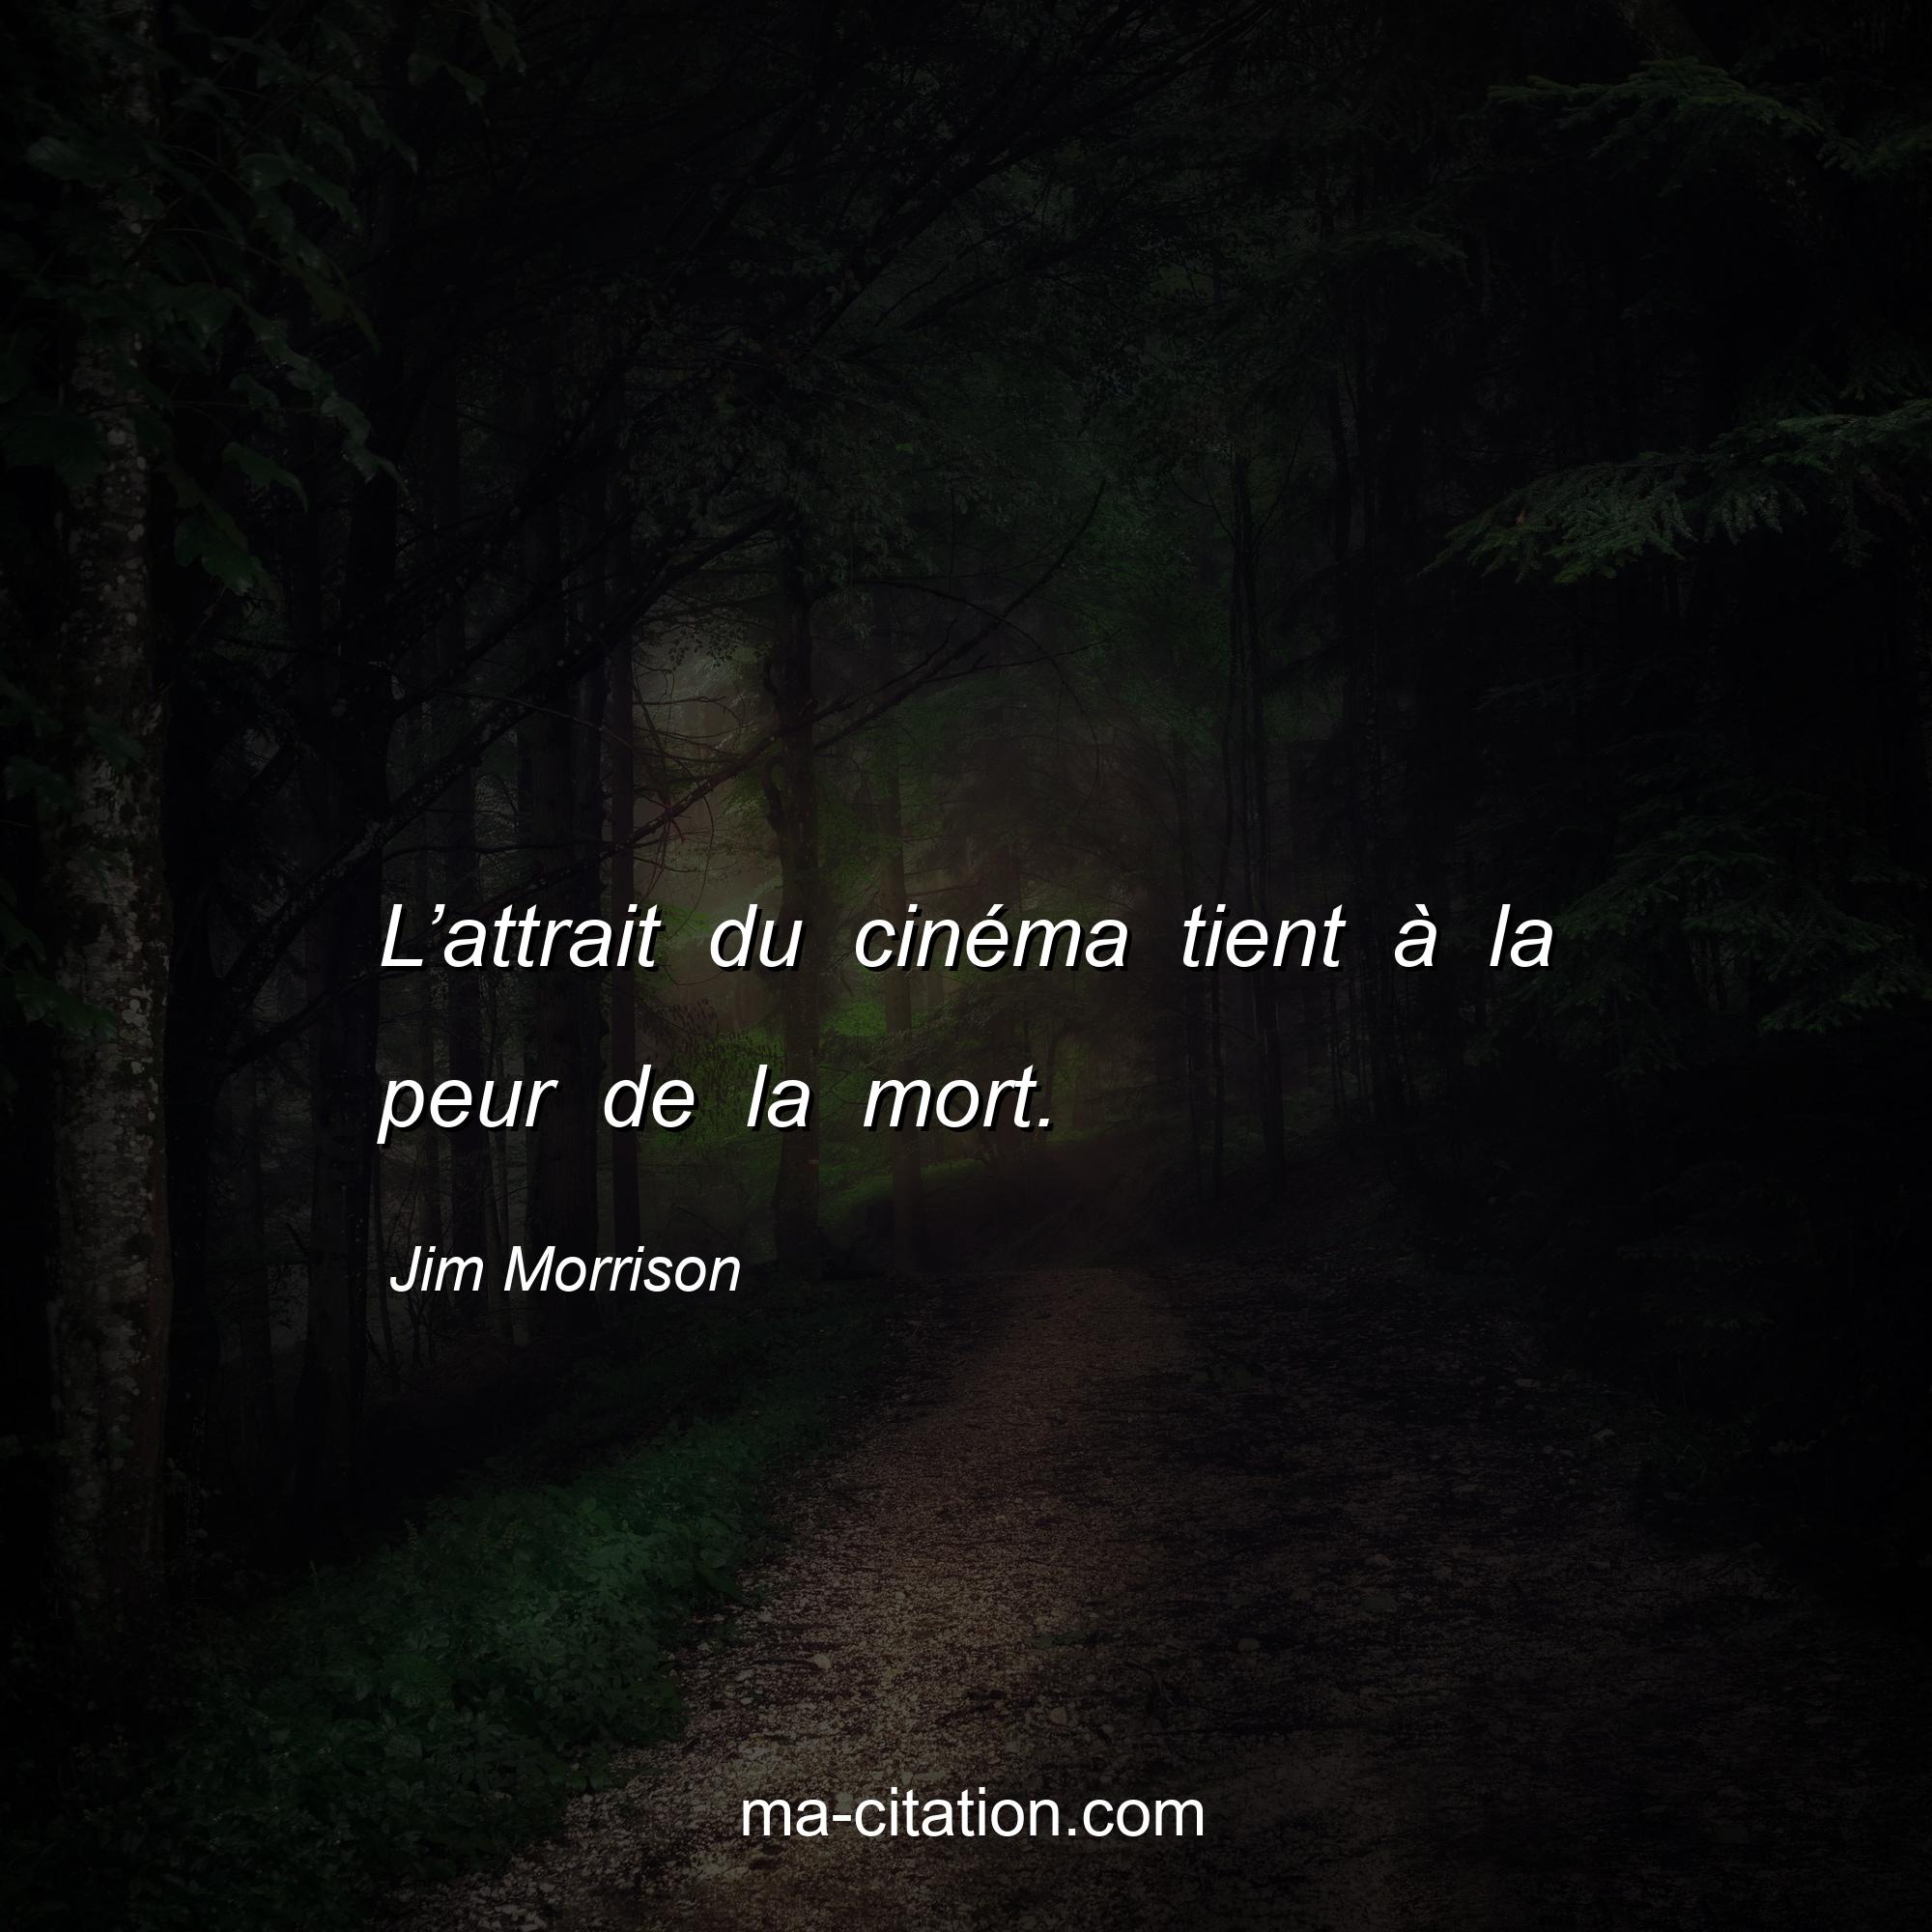 Jim Morrison : L’attrait du cinéma tient à la peur de la mort.